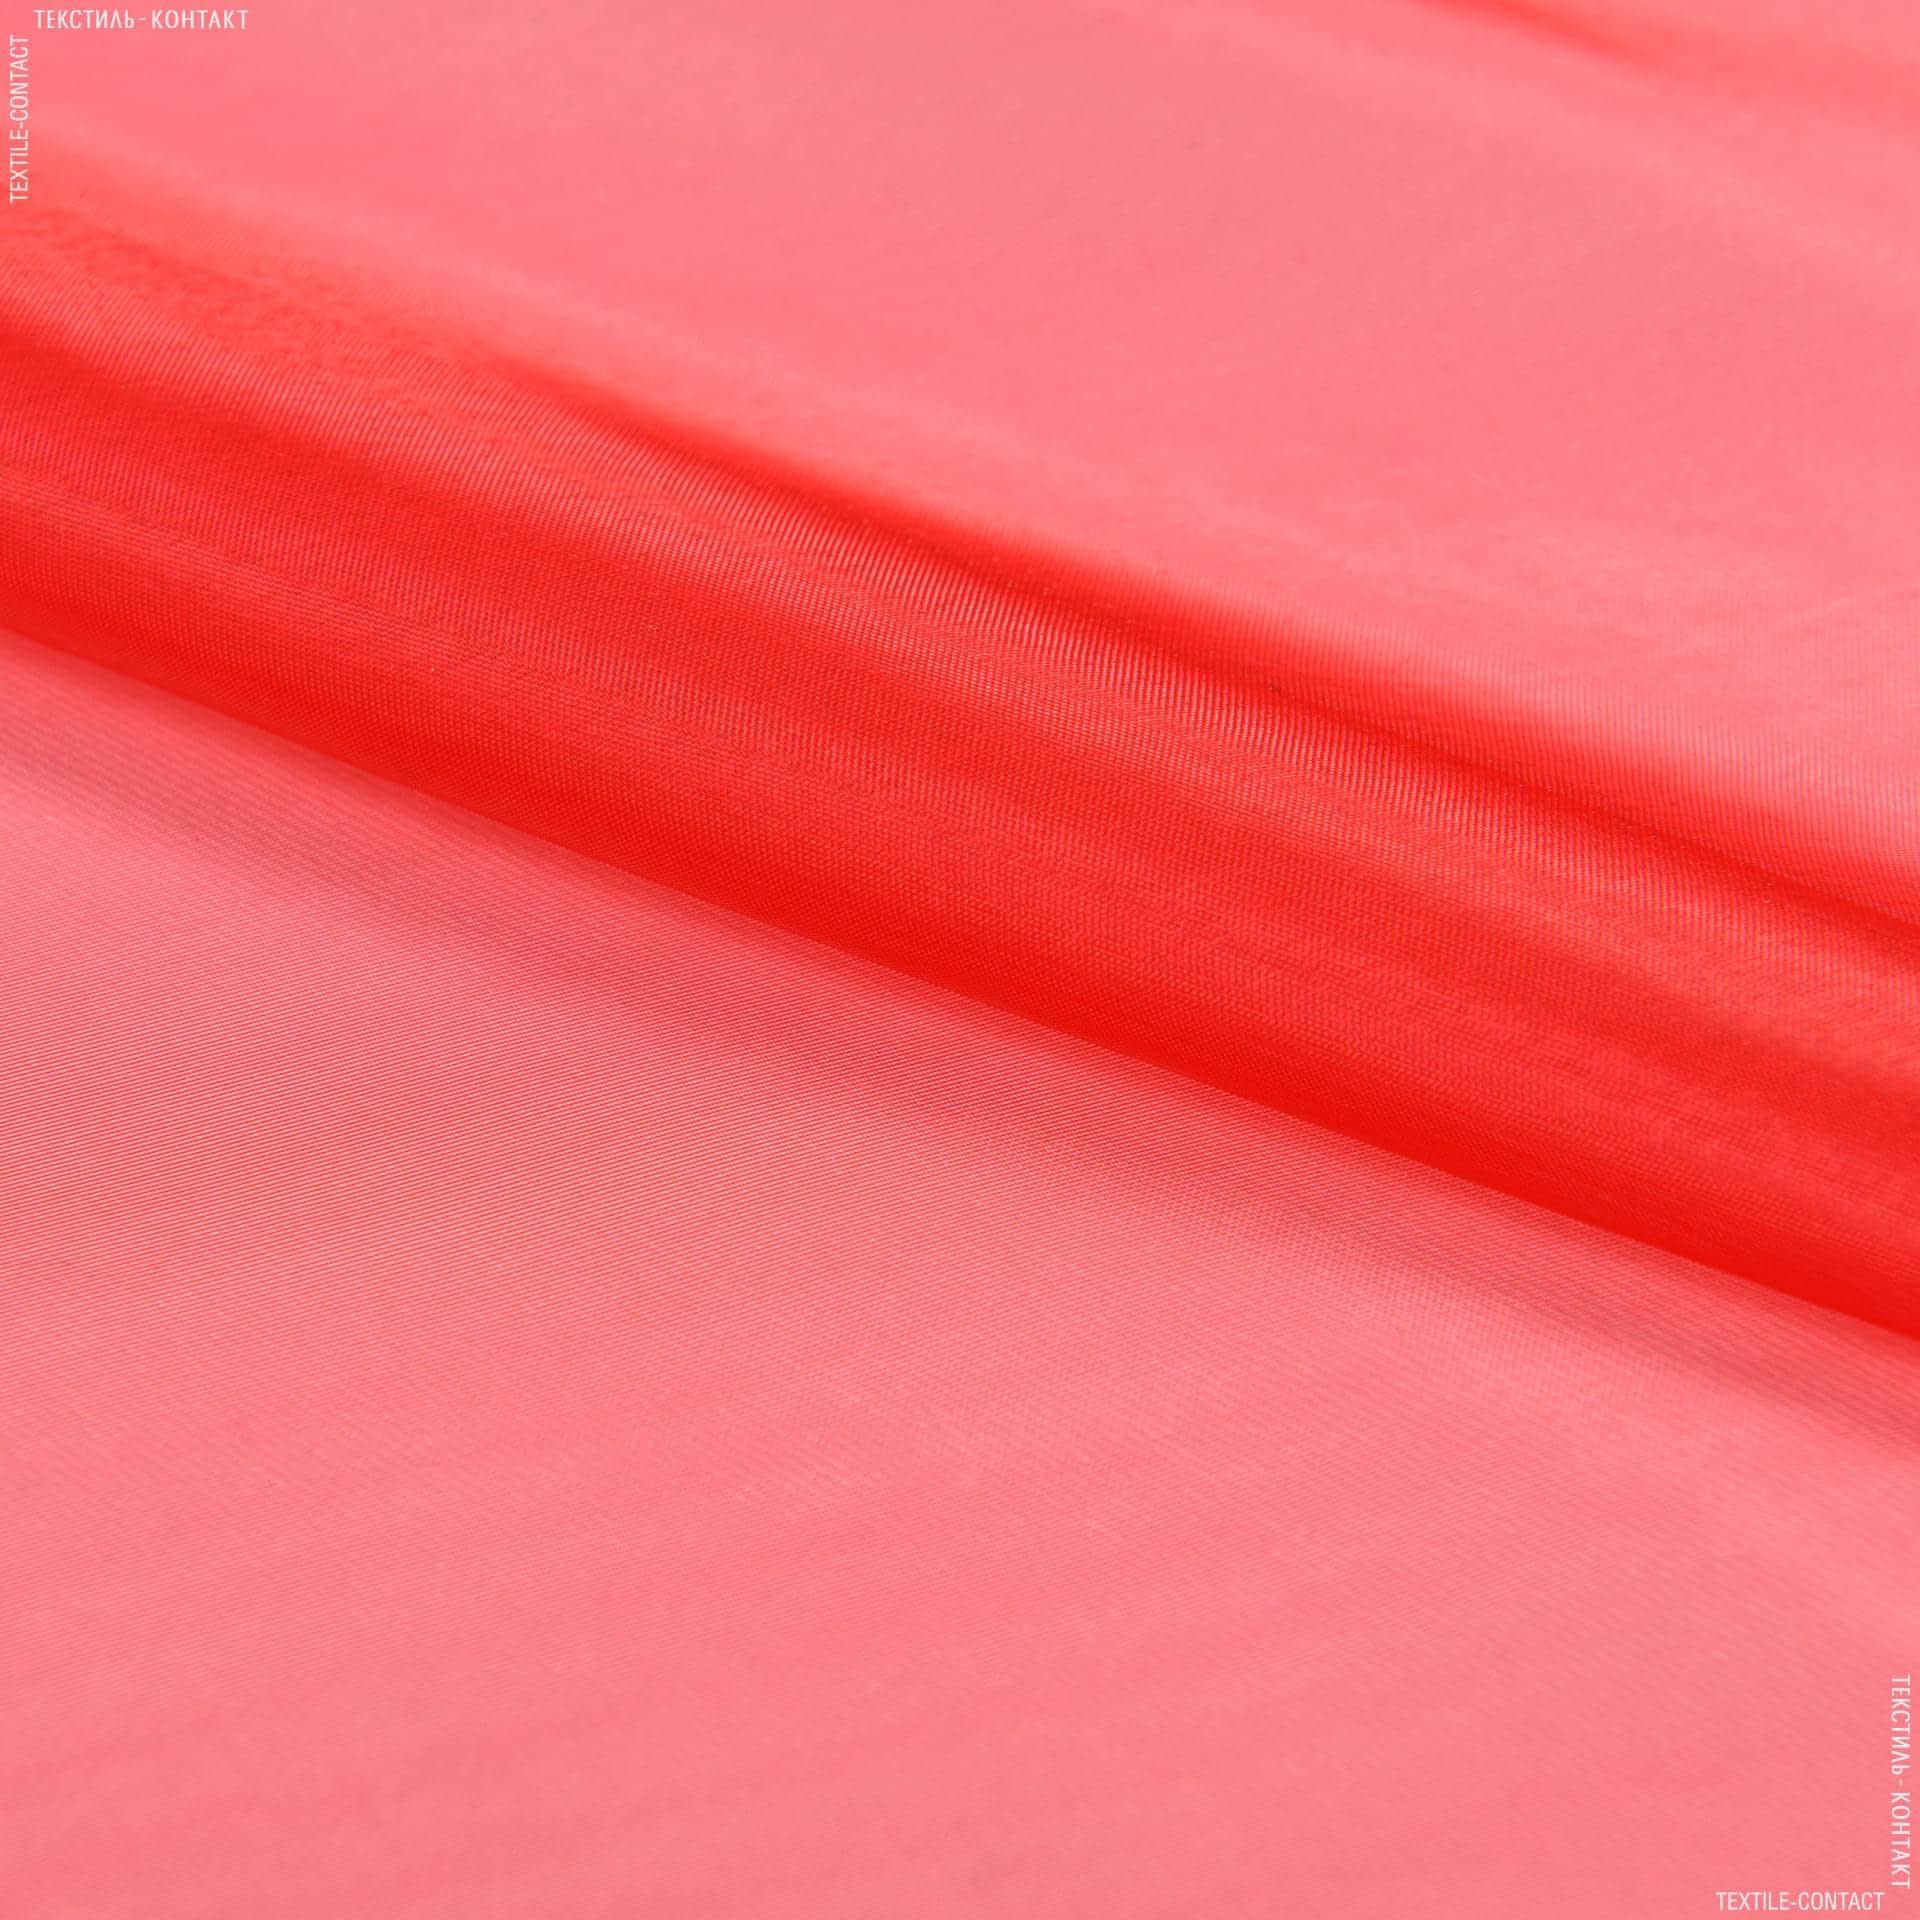 Ткани для платьев - Органза красный